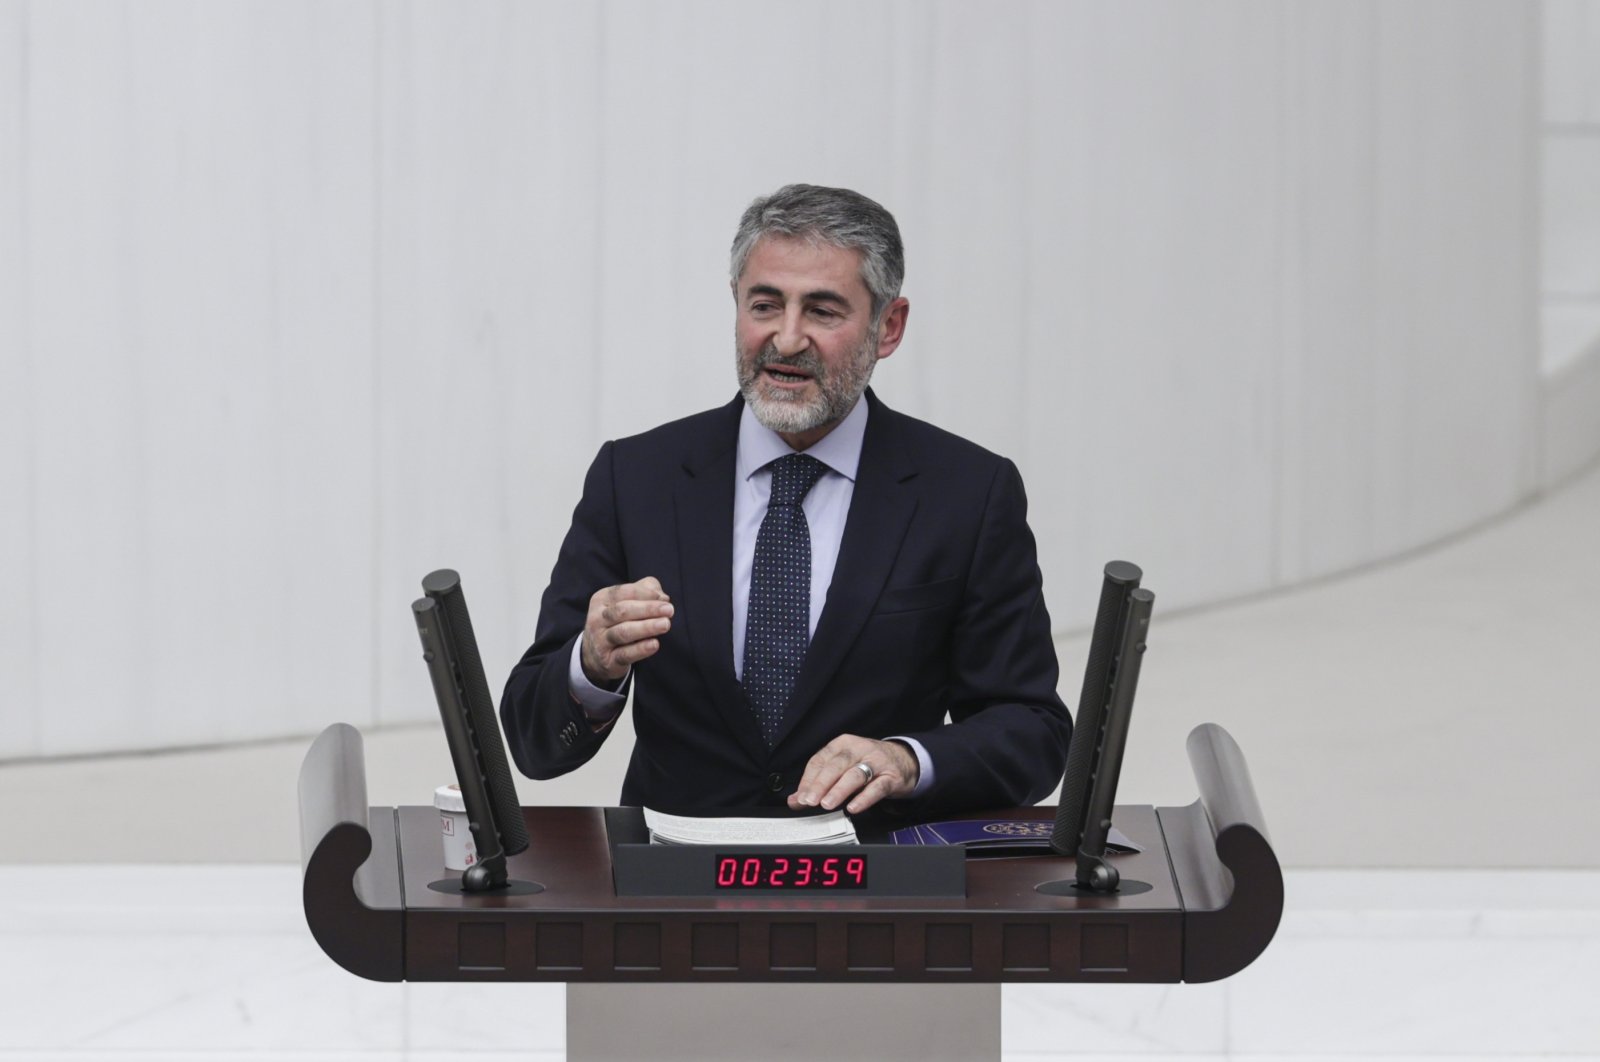 Menteri keuangan Turki yang baru diangkat menjanjikan disiplin fiskal